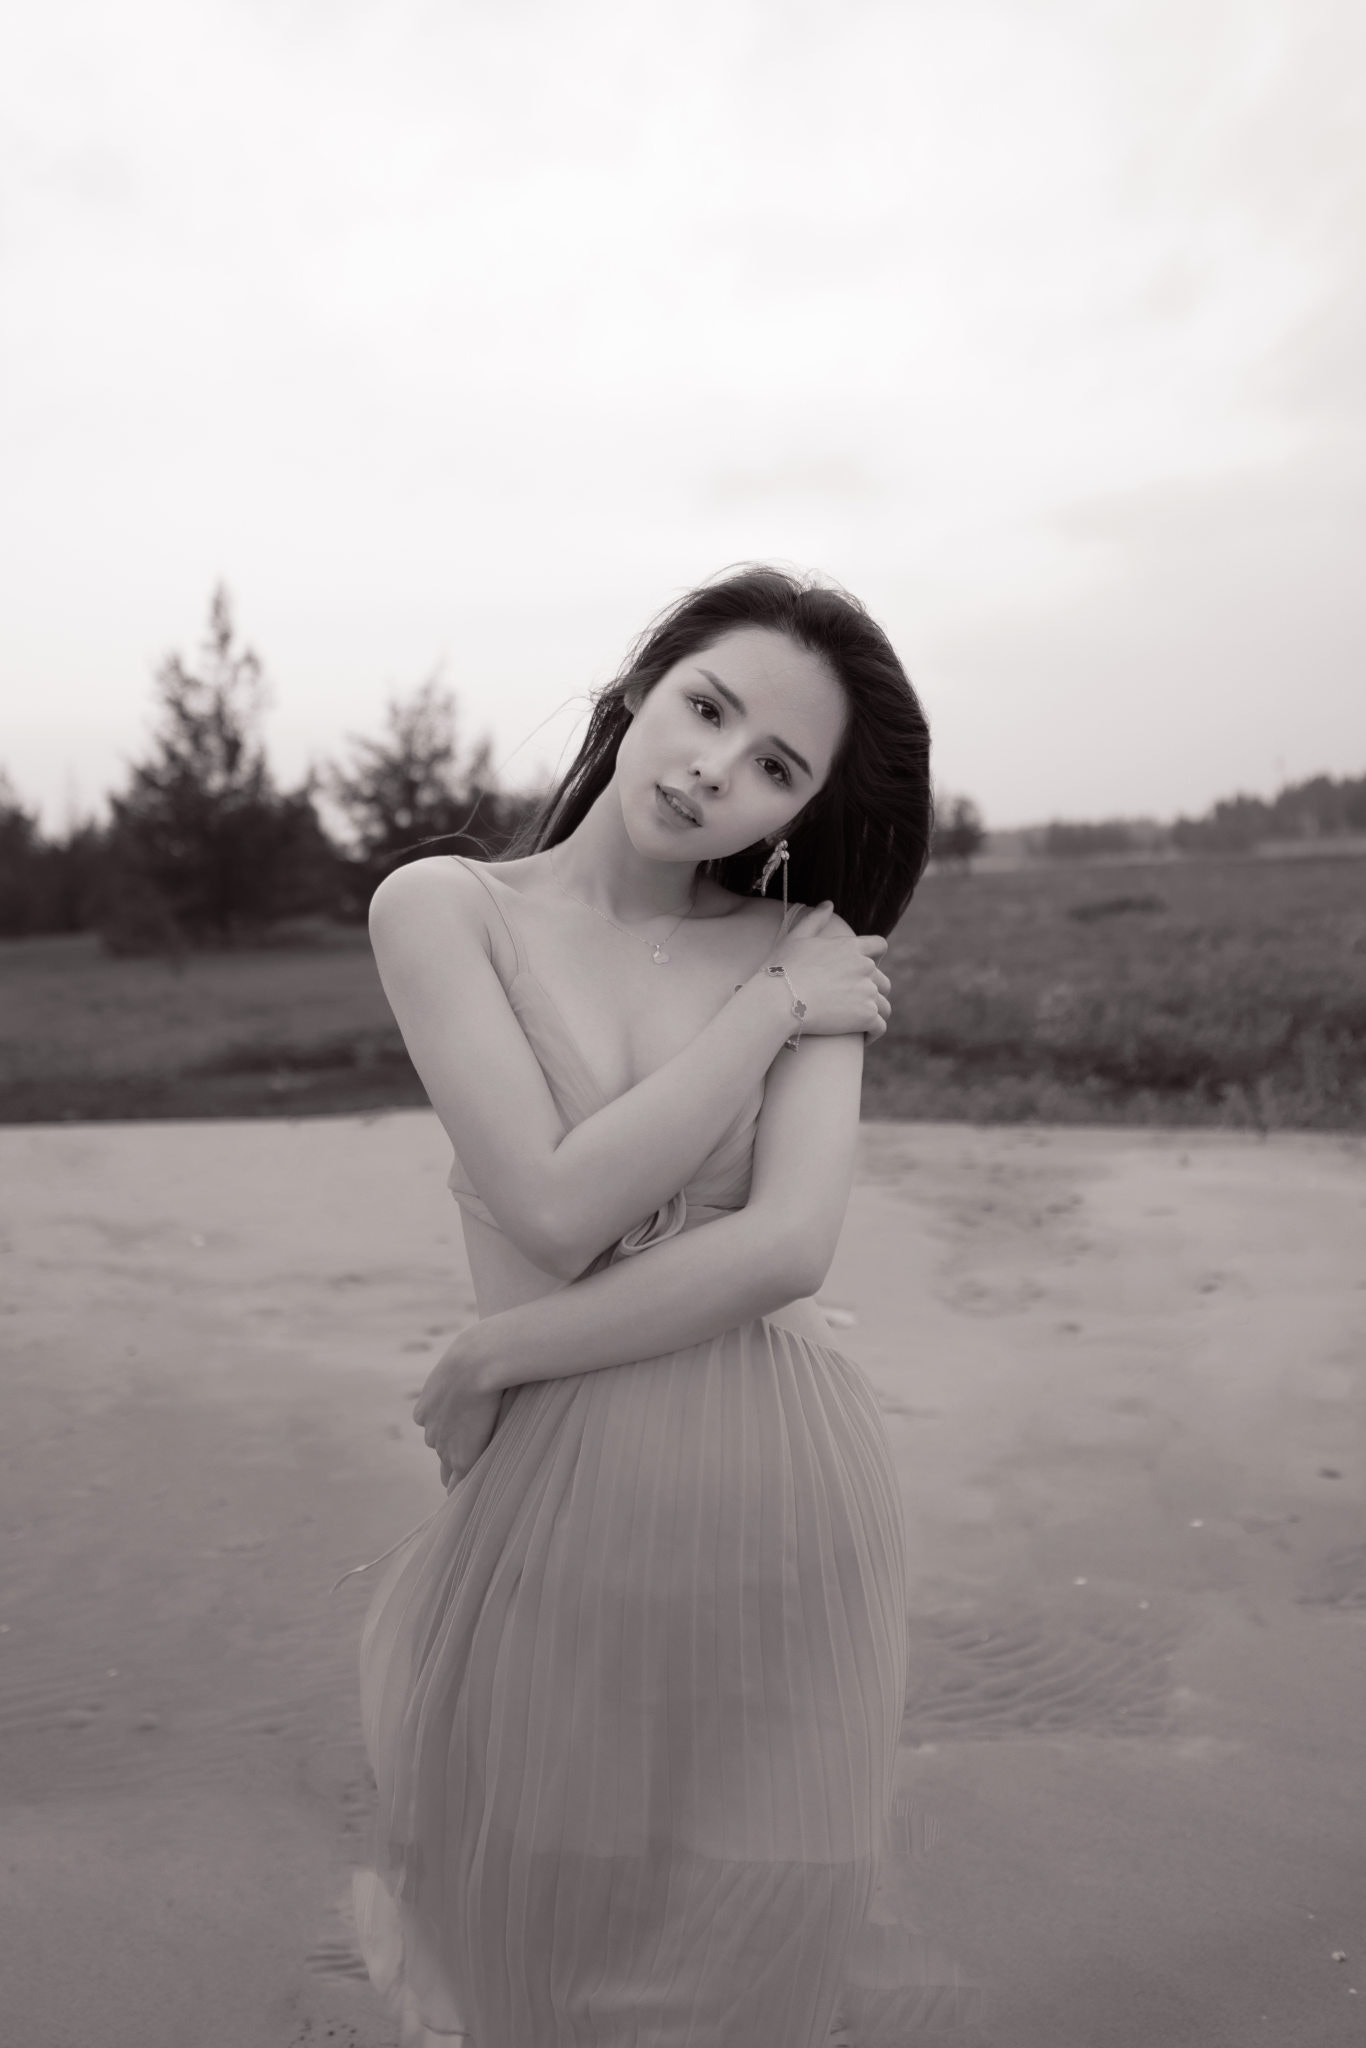 Qin Xiaoqiang Women Asian Long Hair Head Tilt Monochrome Dress Outdoors Horizon 1366x2048